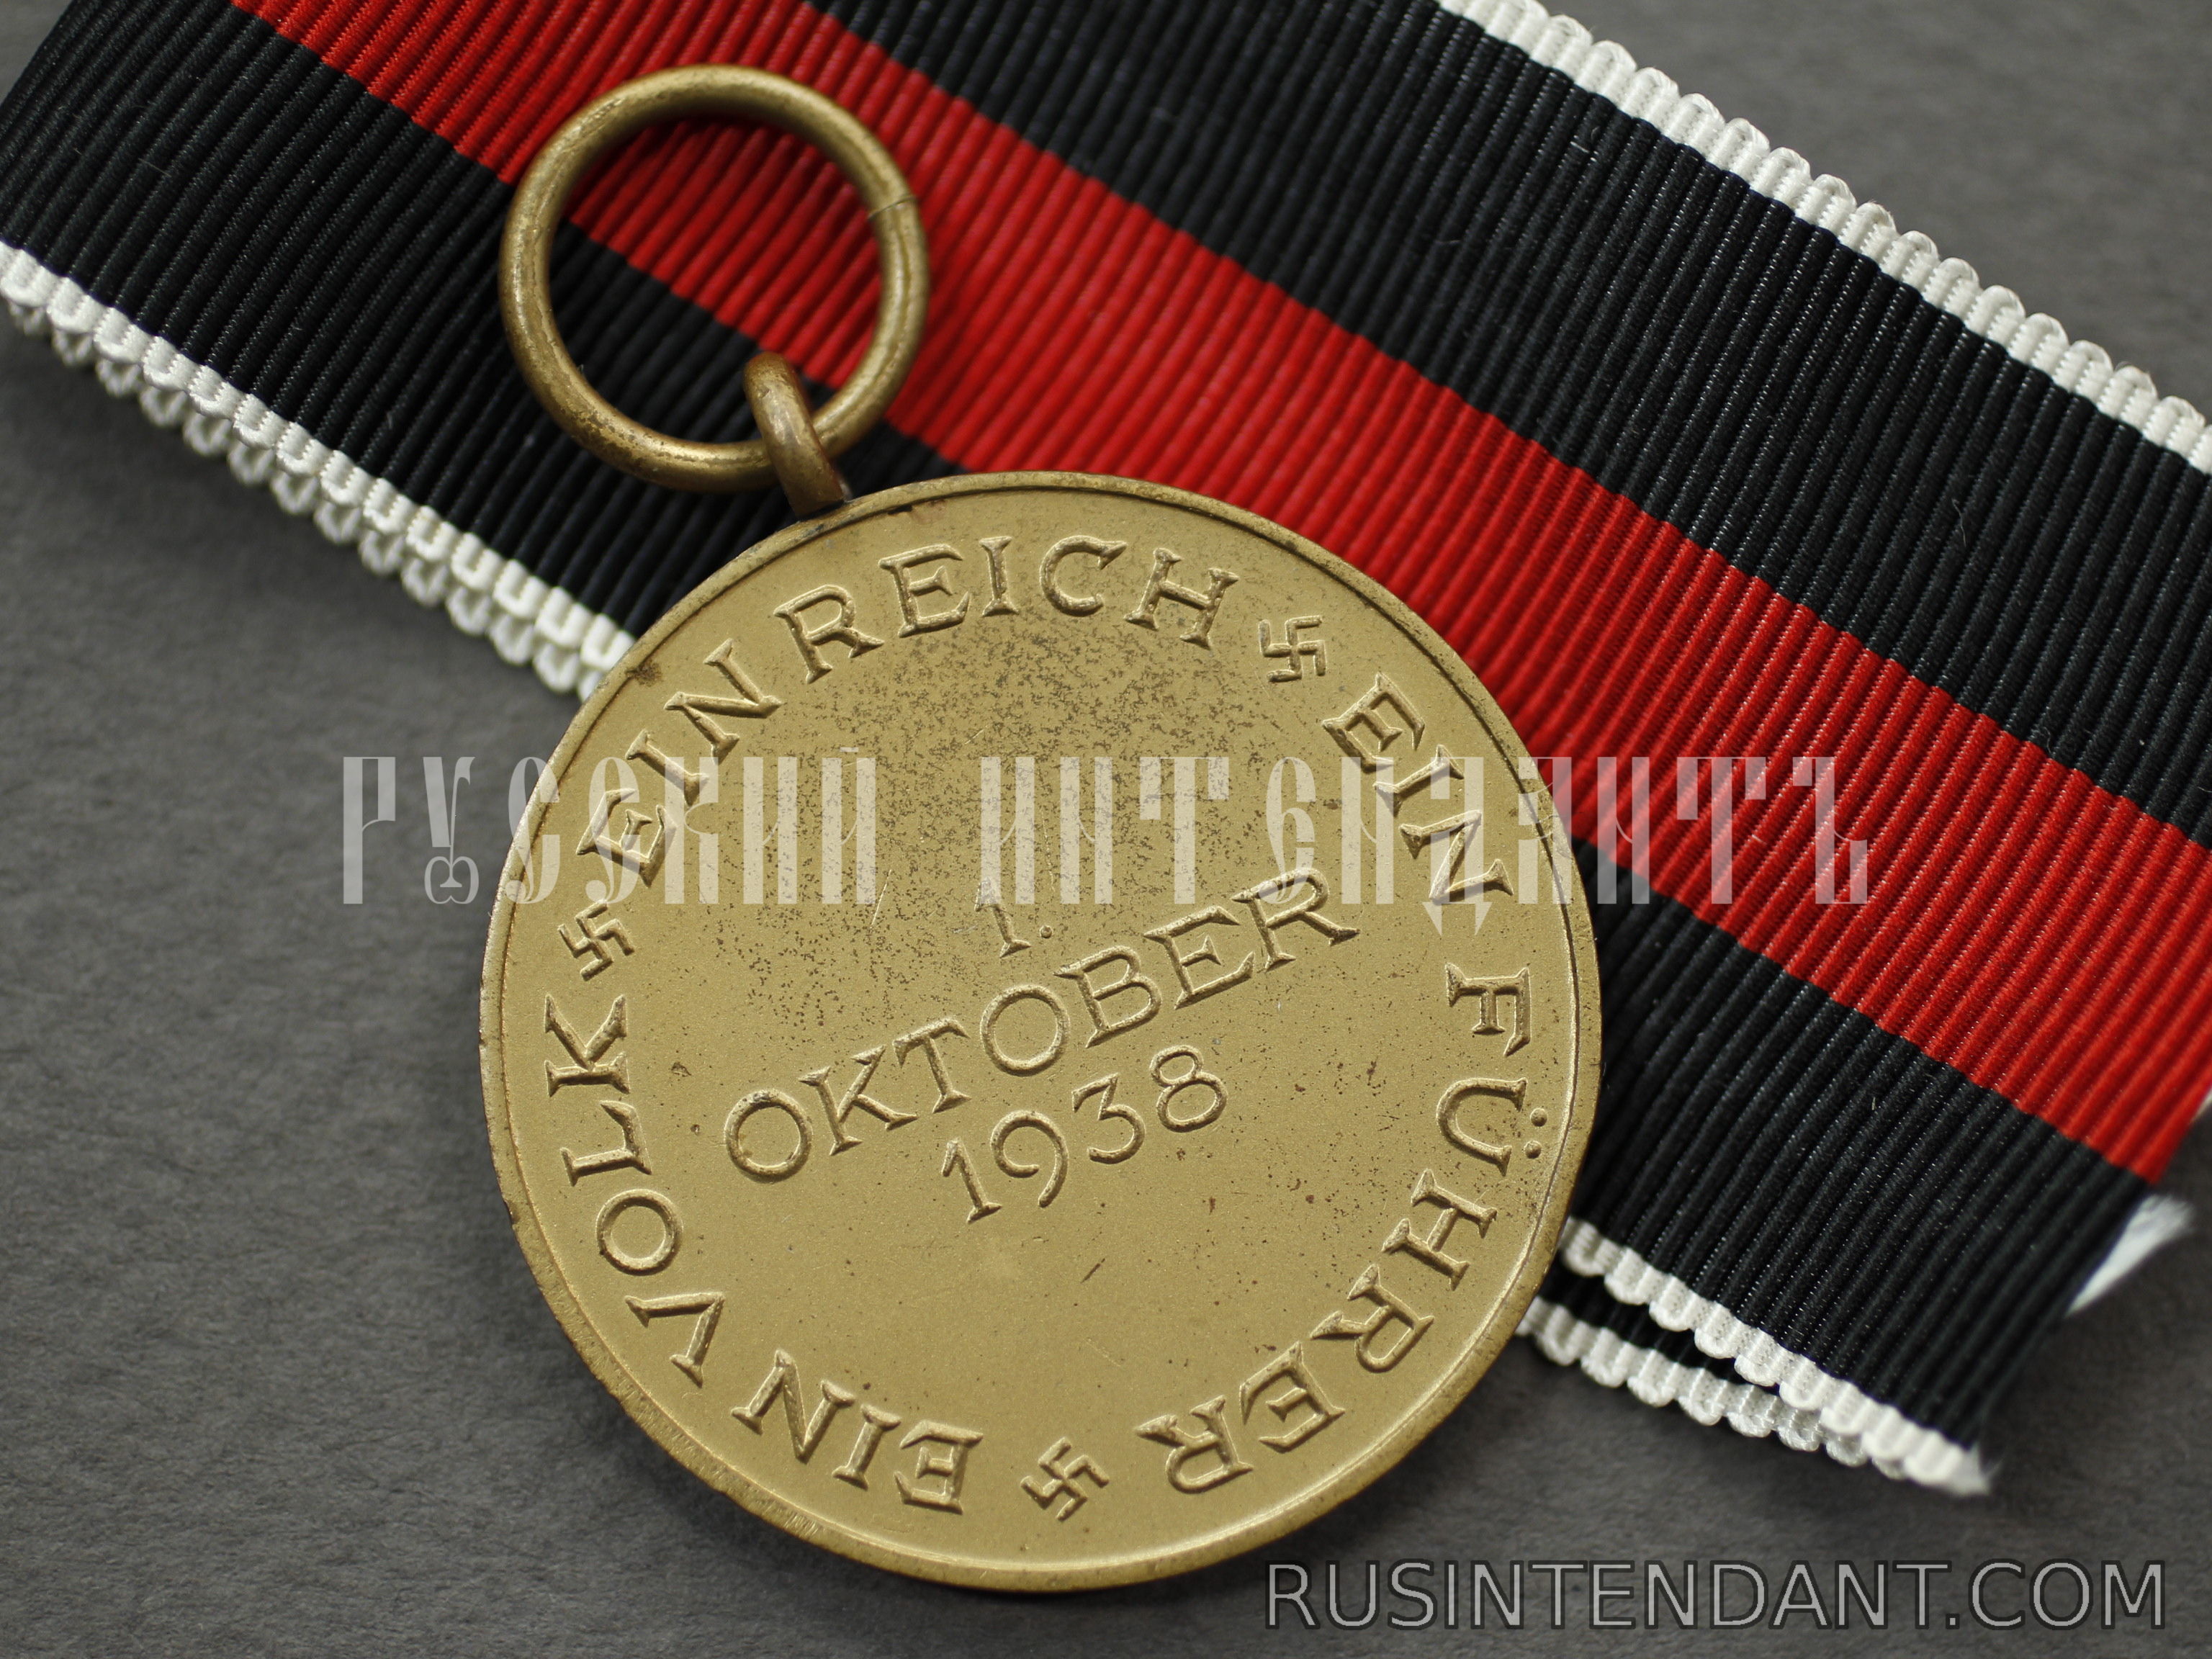 Фото 4: Медаль "В память 1 октября 1938 года" 